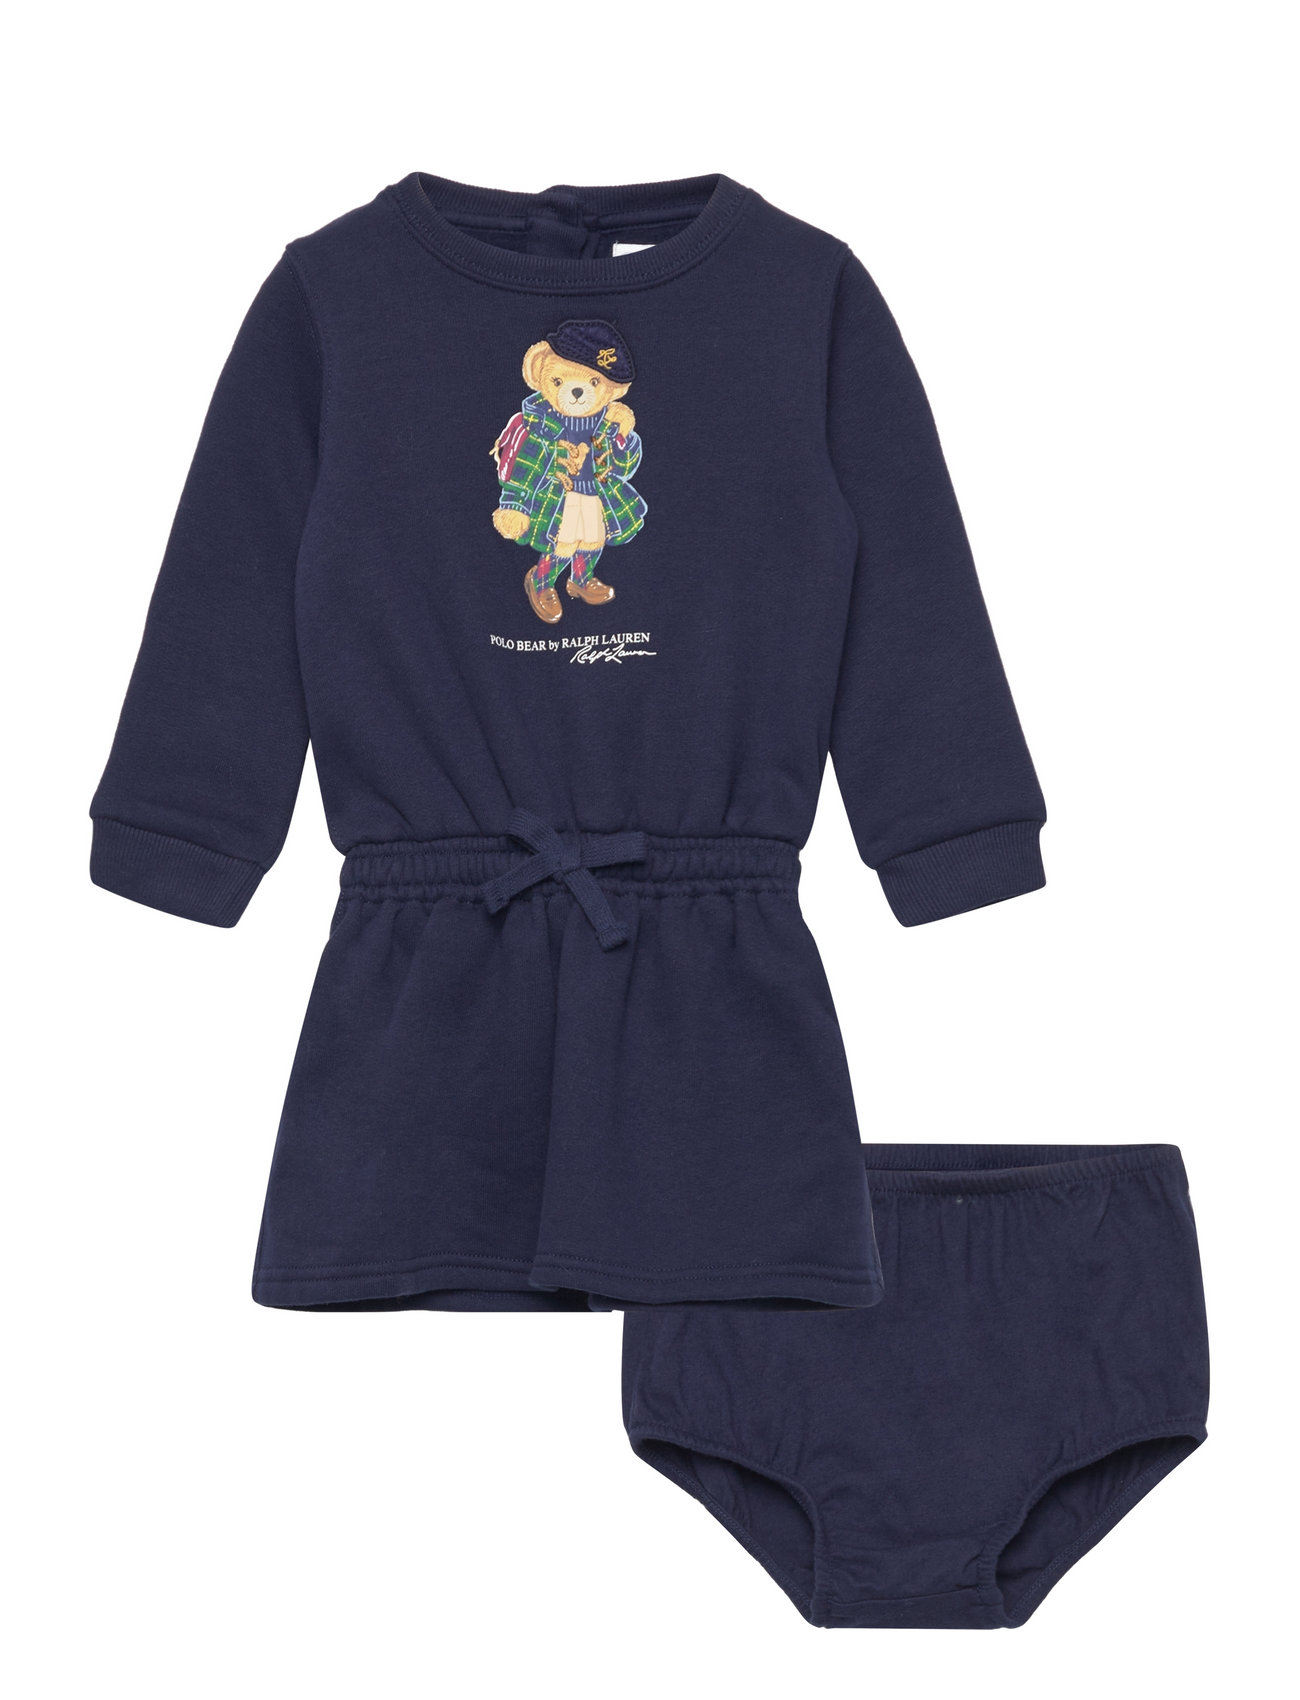 Polo Bear Fleece Dress & Bloomer Dresses & Skirts Dresses Casual Dresses Long-sleeved Casual Dresses Navy Ralph Lauren Baby